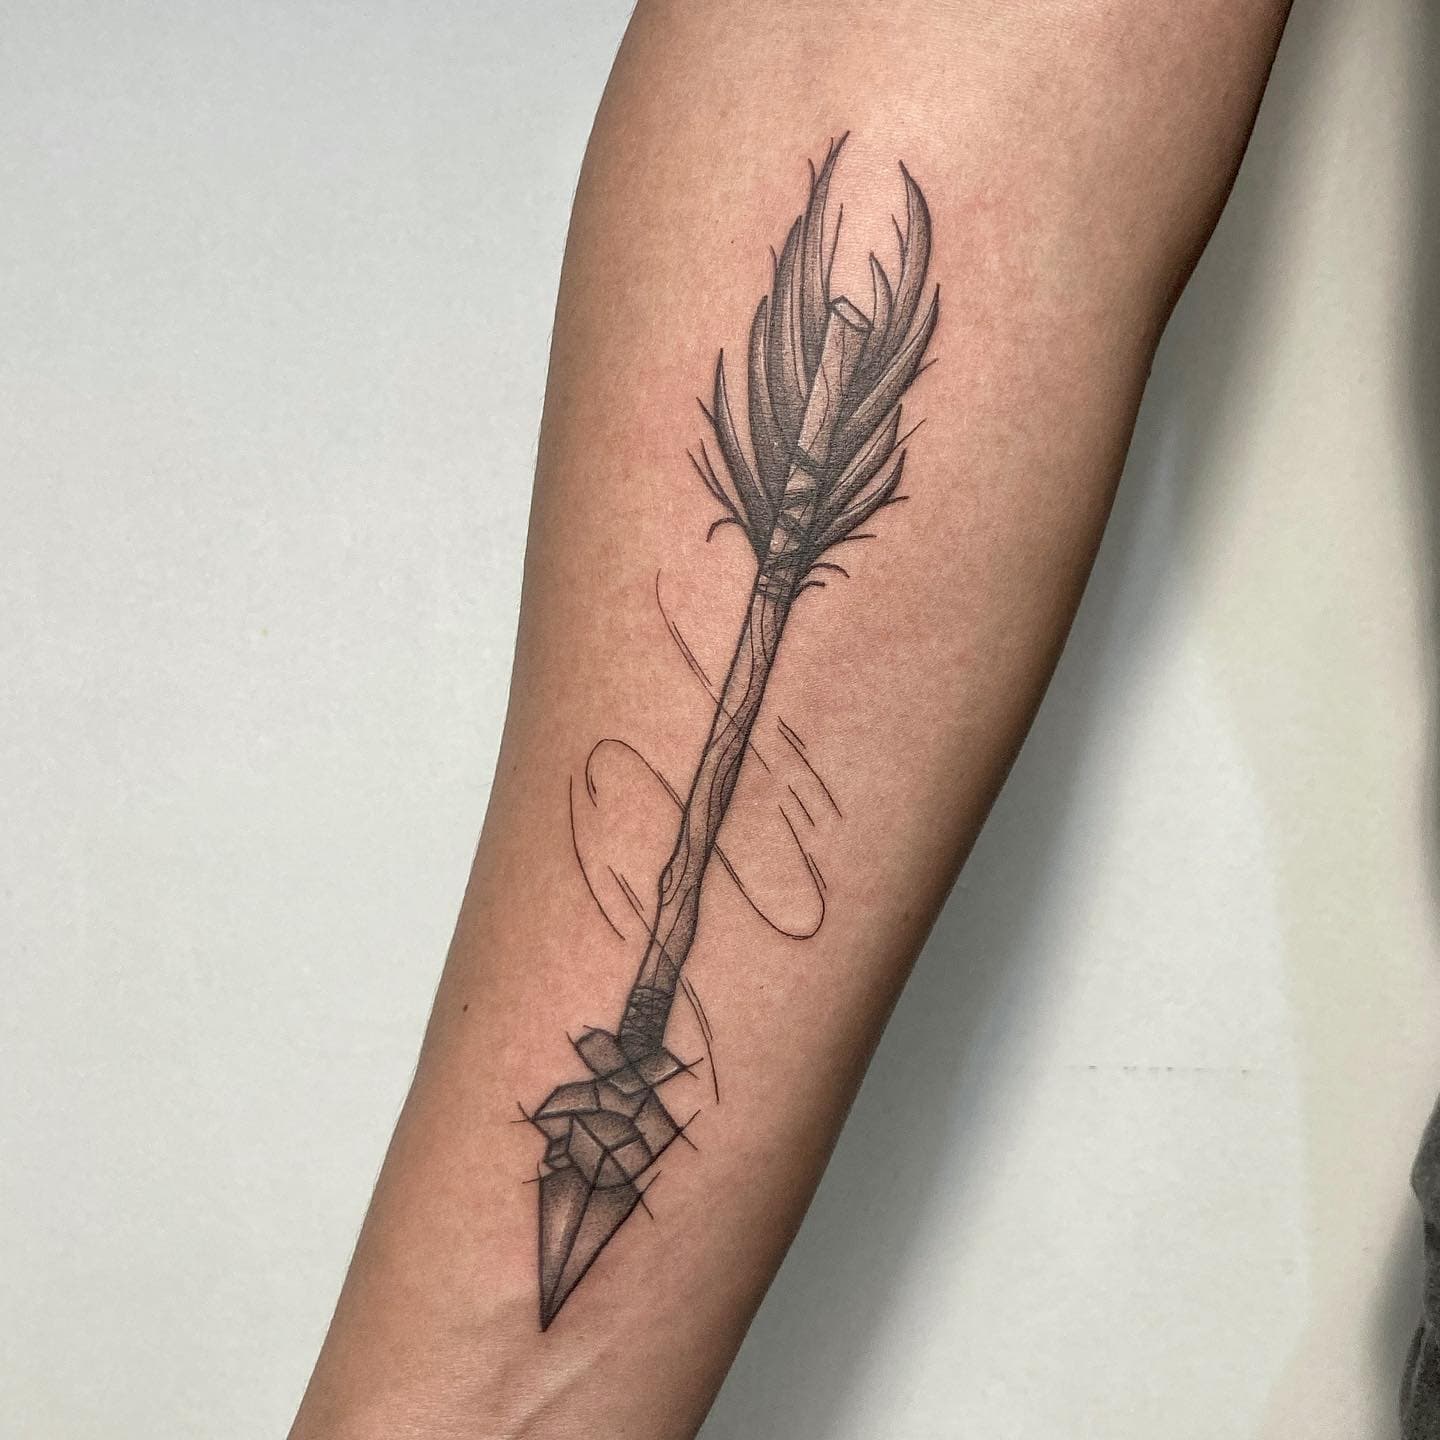 Diseños sencillos de tatuajes de flechas en el brazo